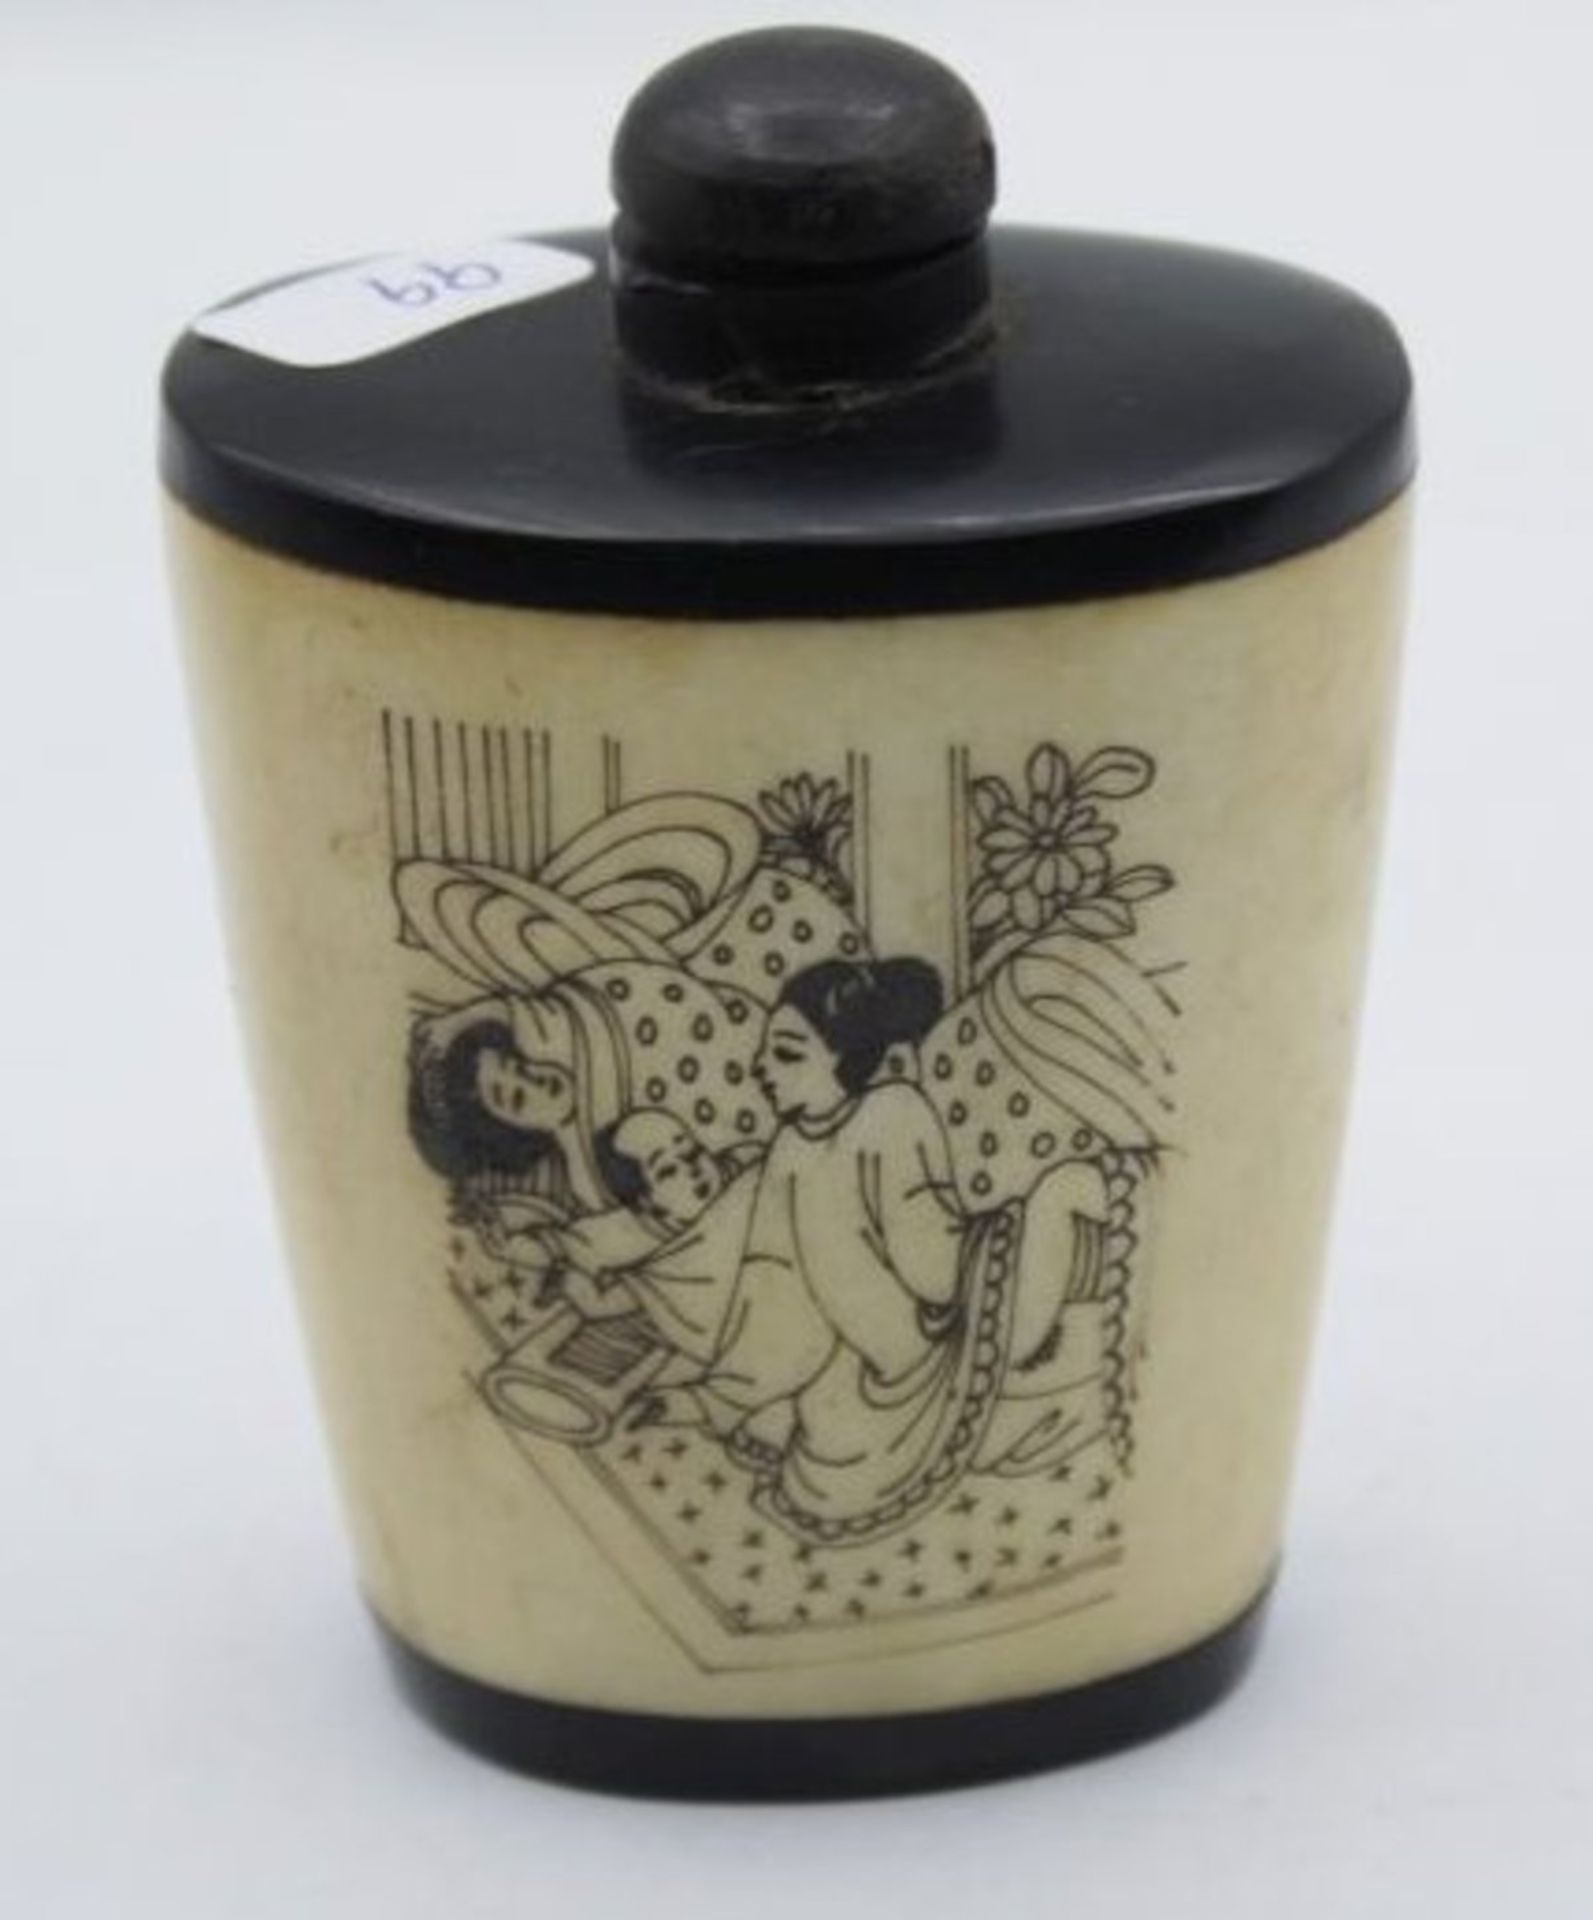 Snuff-Bottle, Japan, wohl Bein, erotische Darstellung, H-7,5cm. - Image 2 of 3